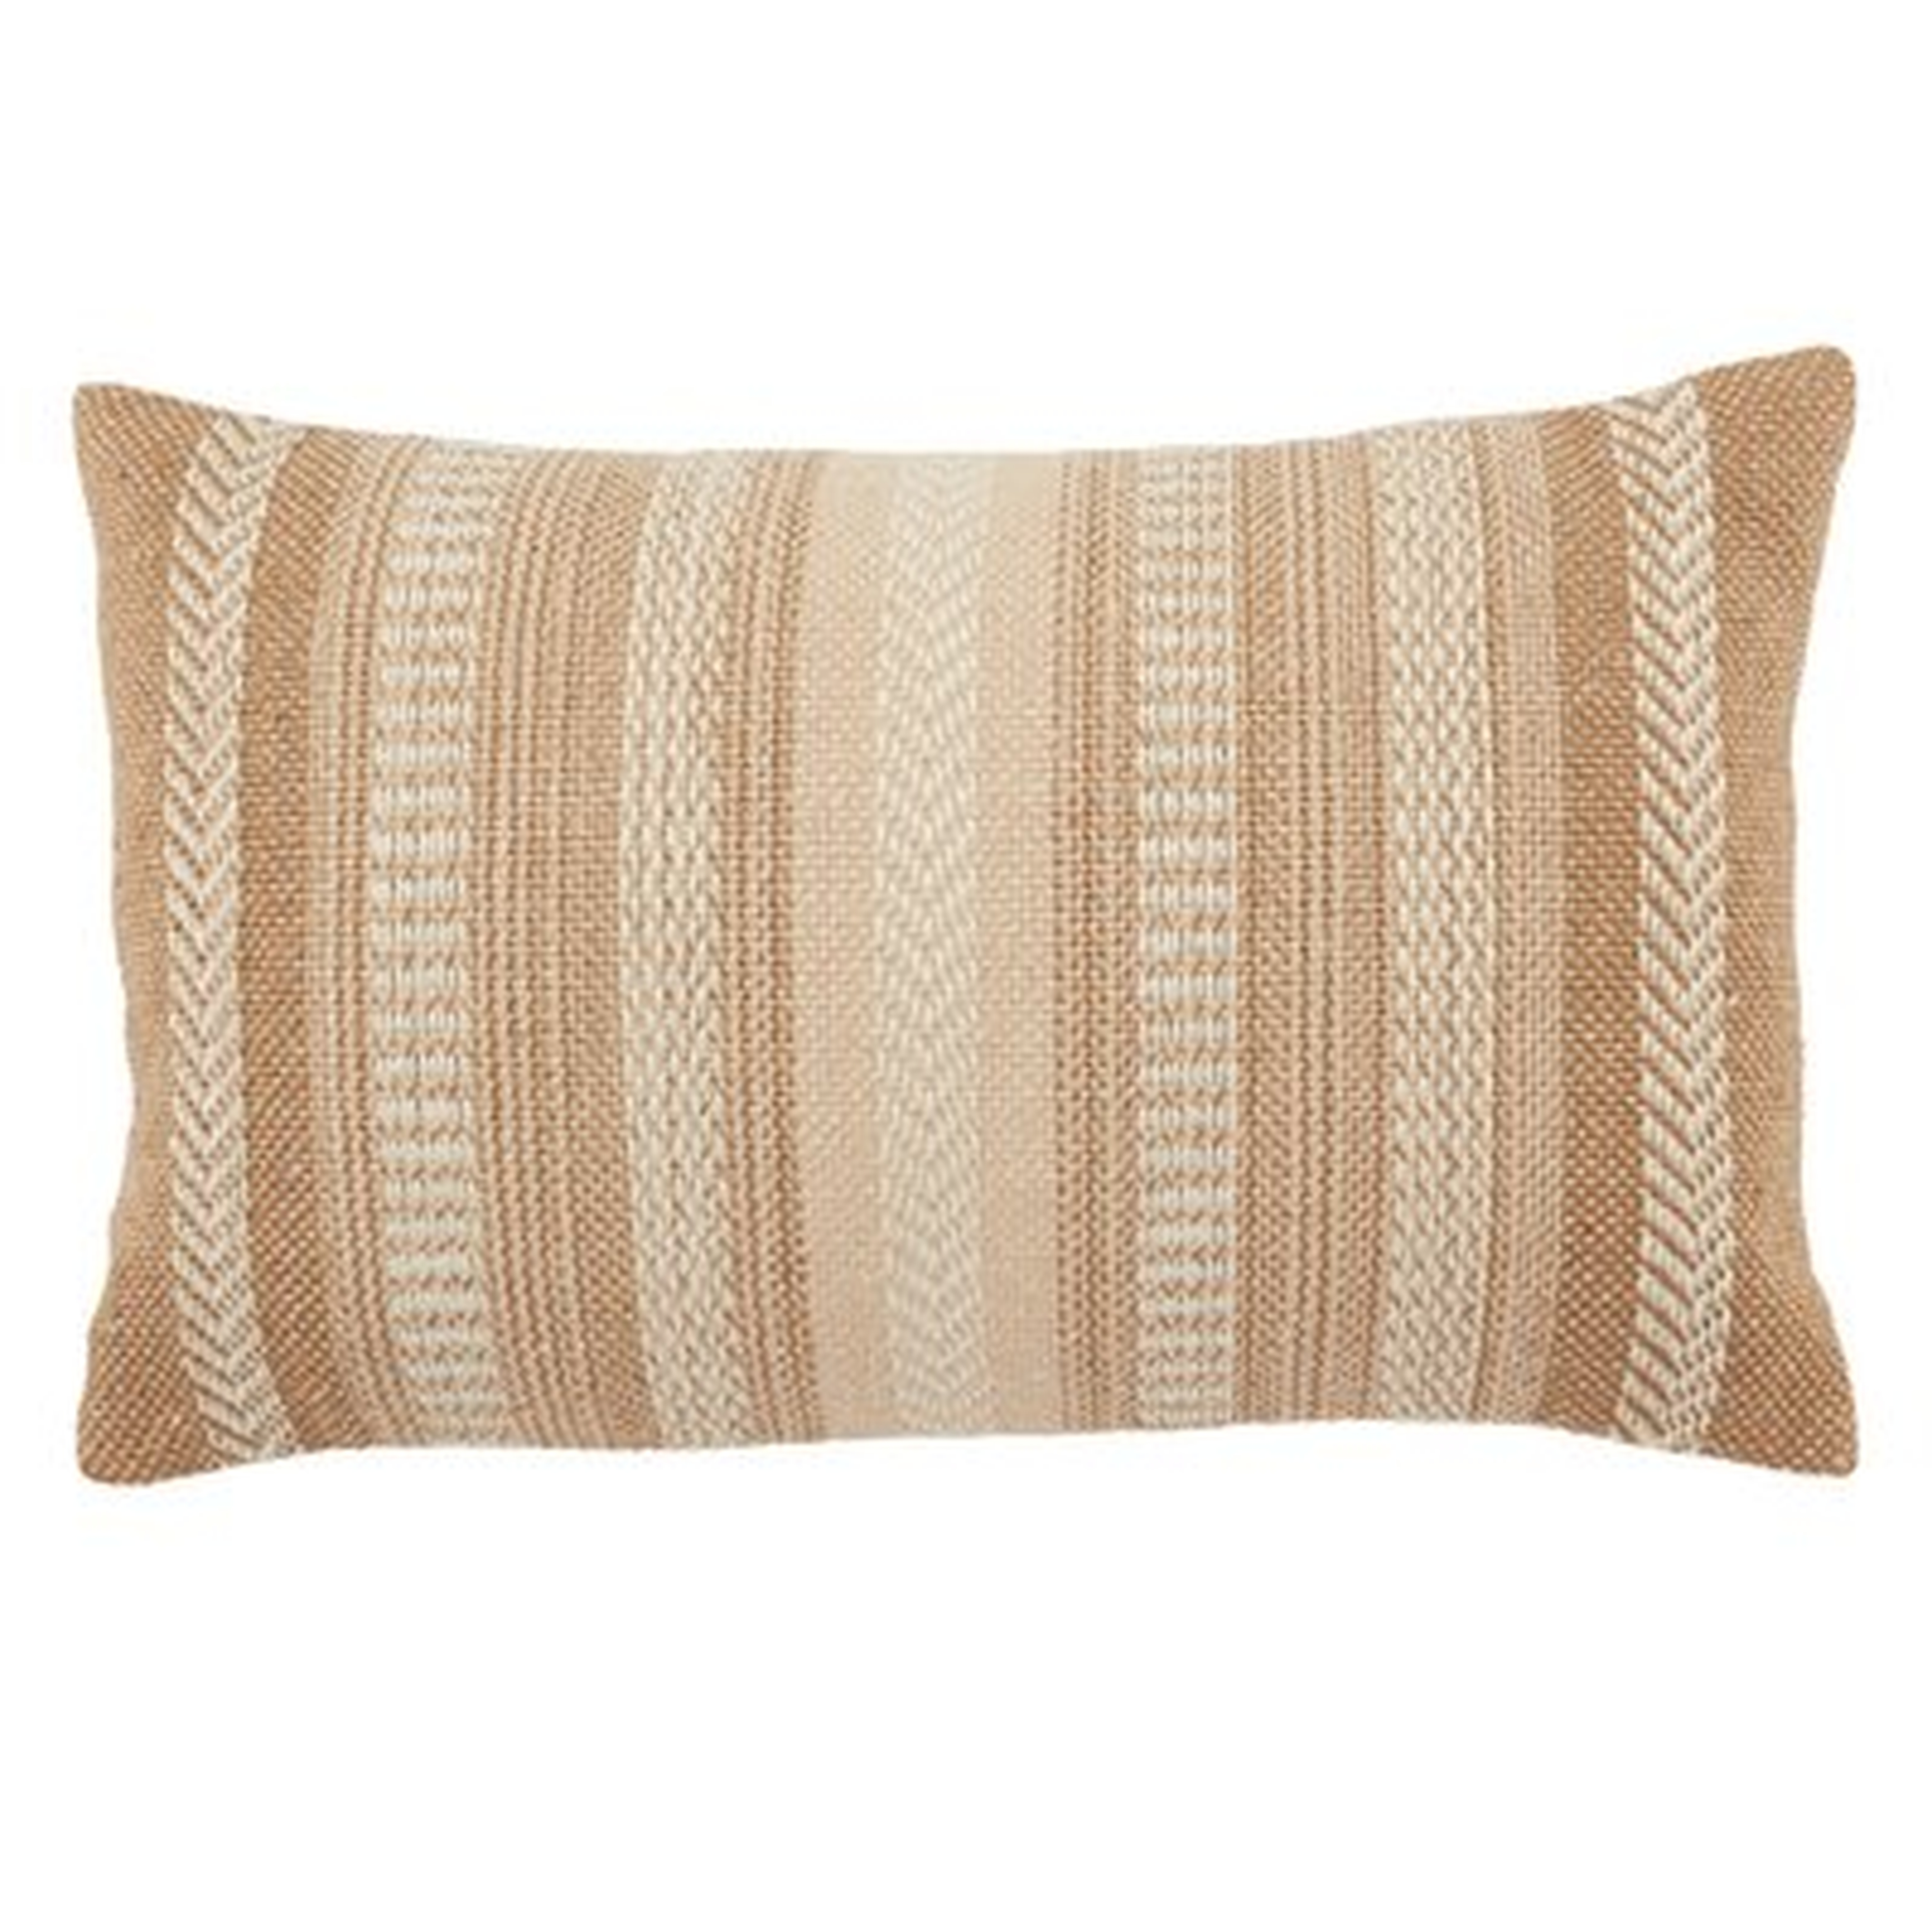 Papyrus Stripes Black/ Ivory Indoor/ Outdoor Lumbar Pillow 13X21 Inch - Wayfair